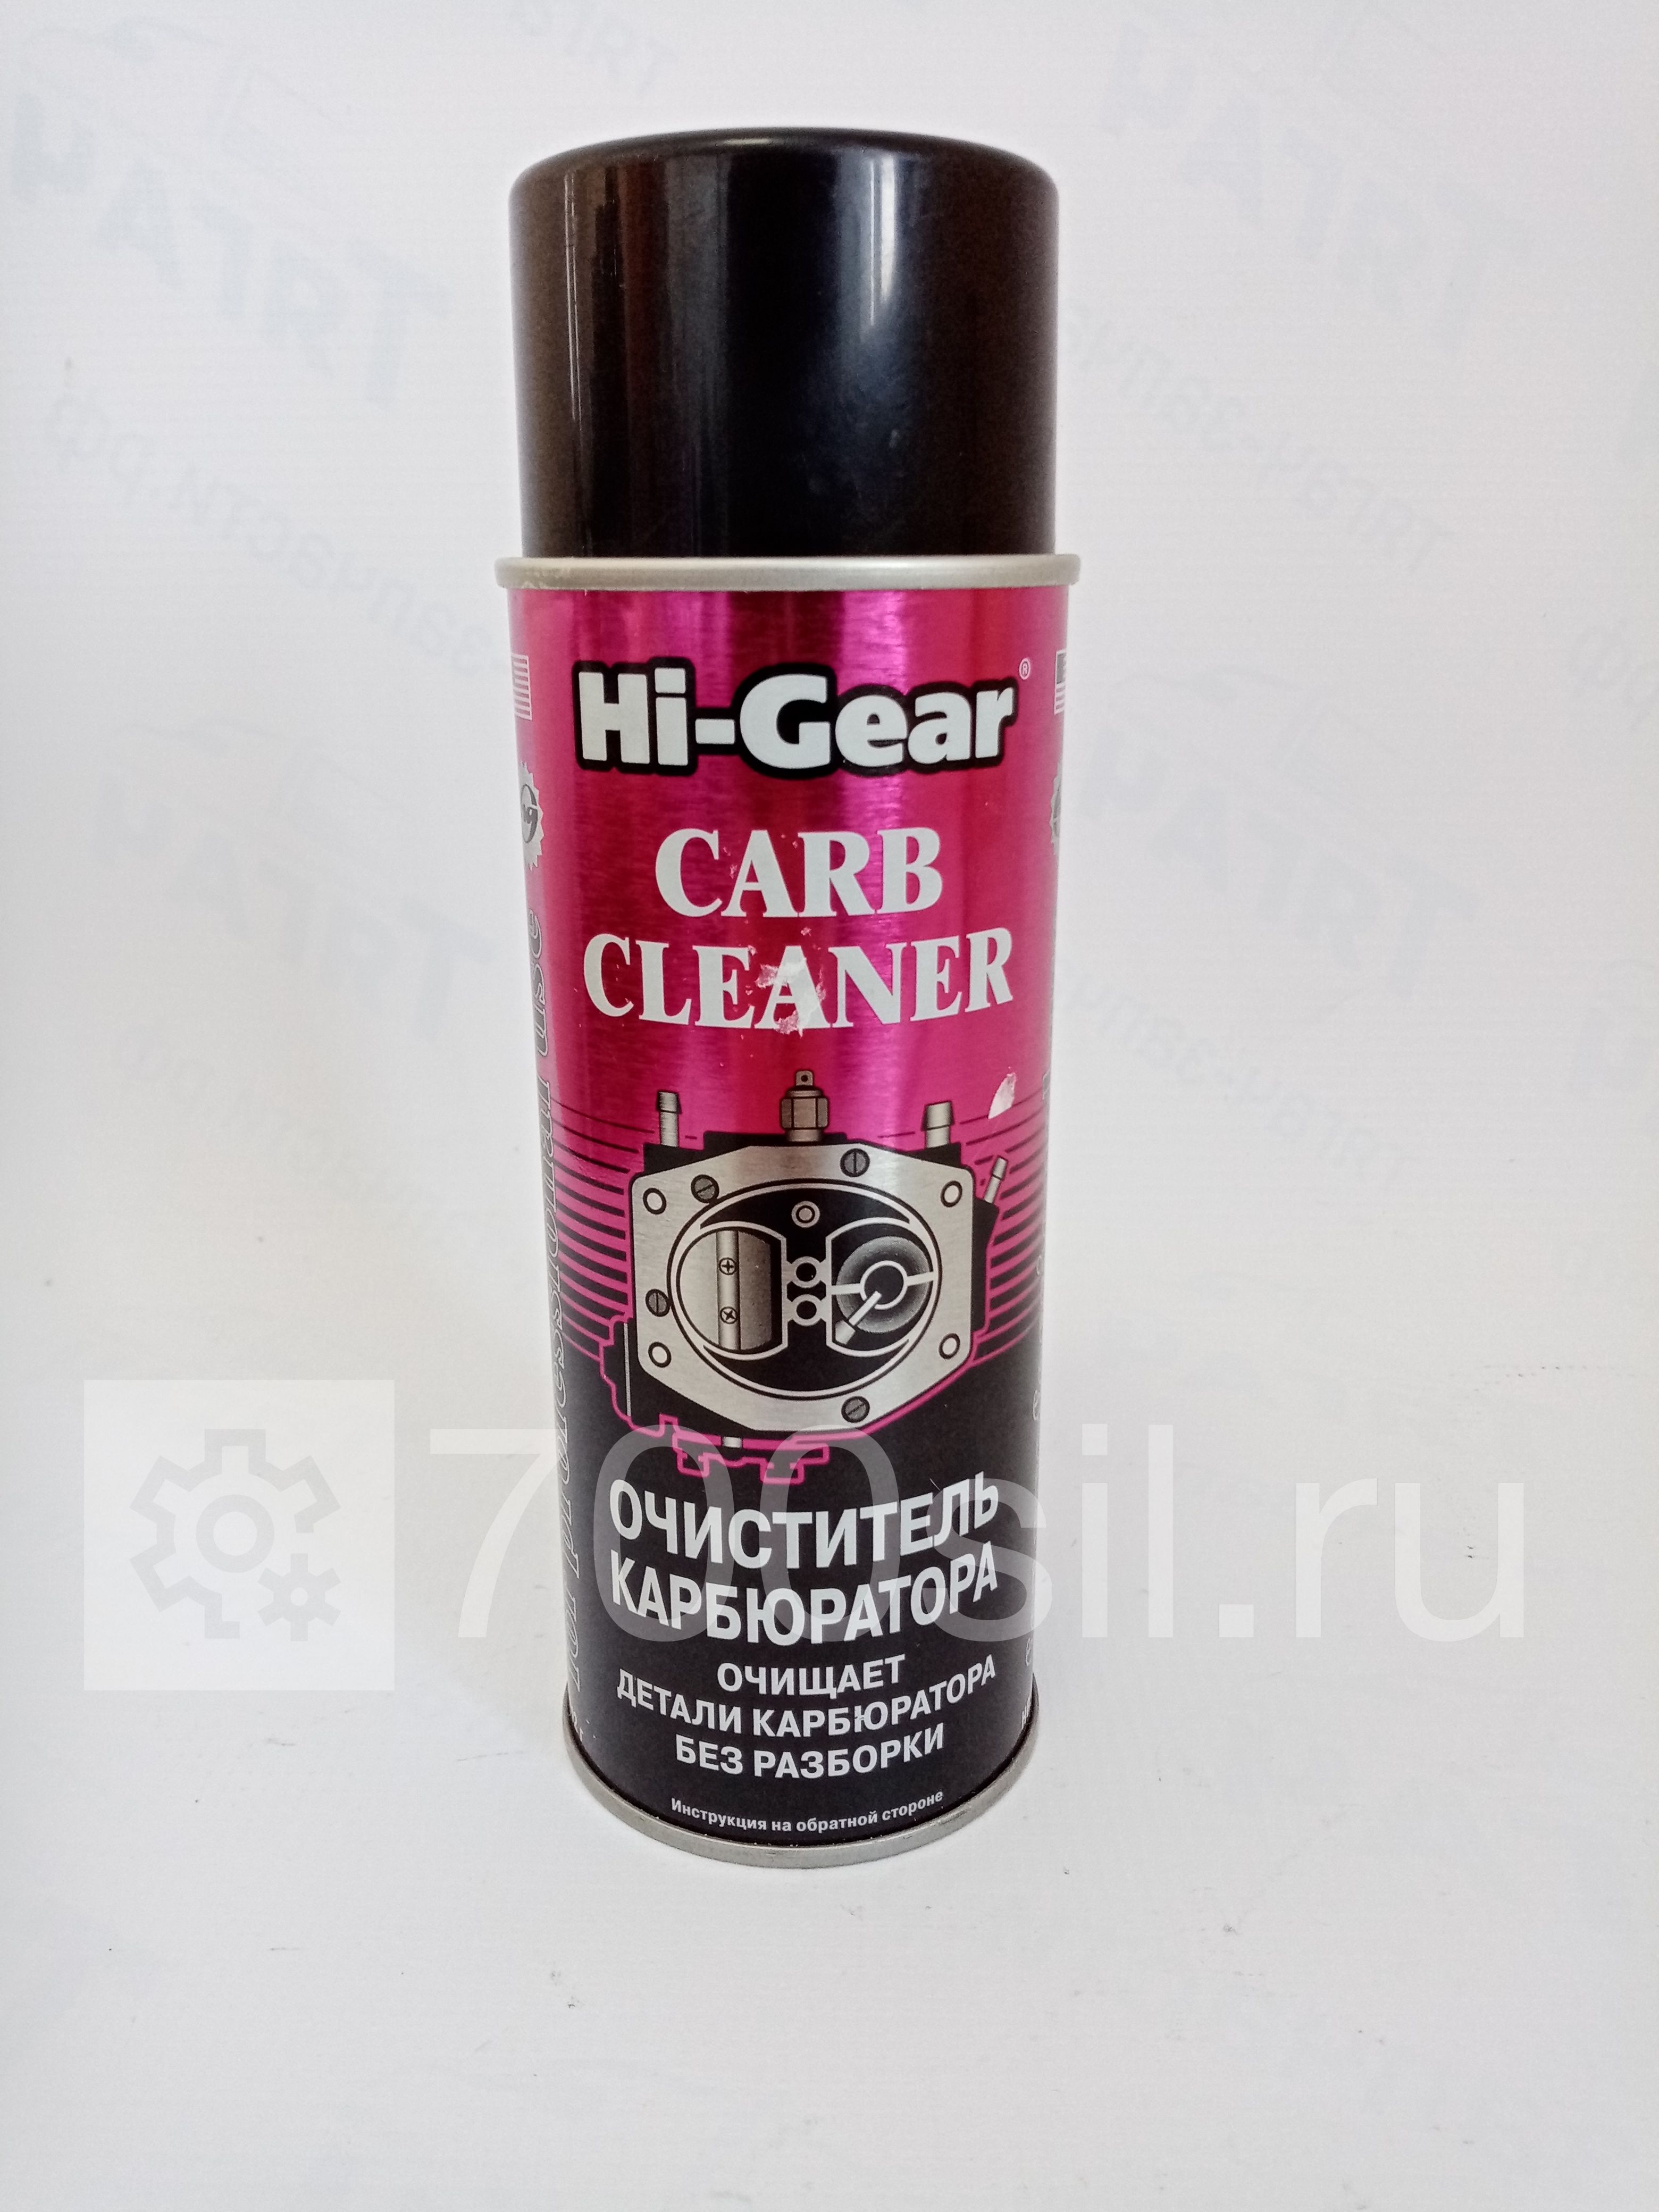 Очиститель карбюратора (Hi-Gear)